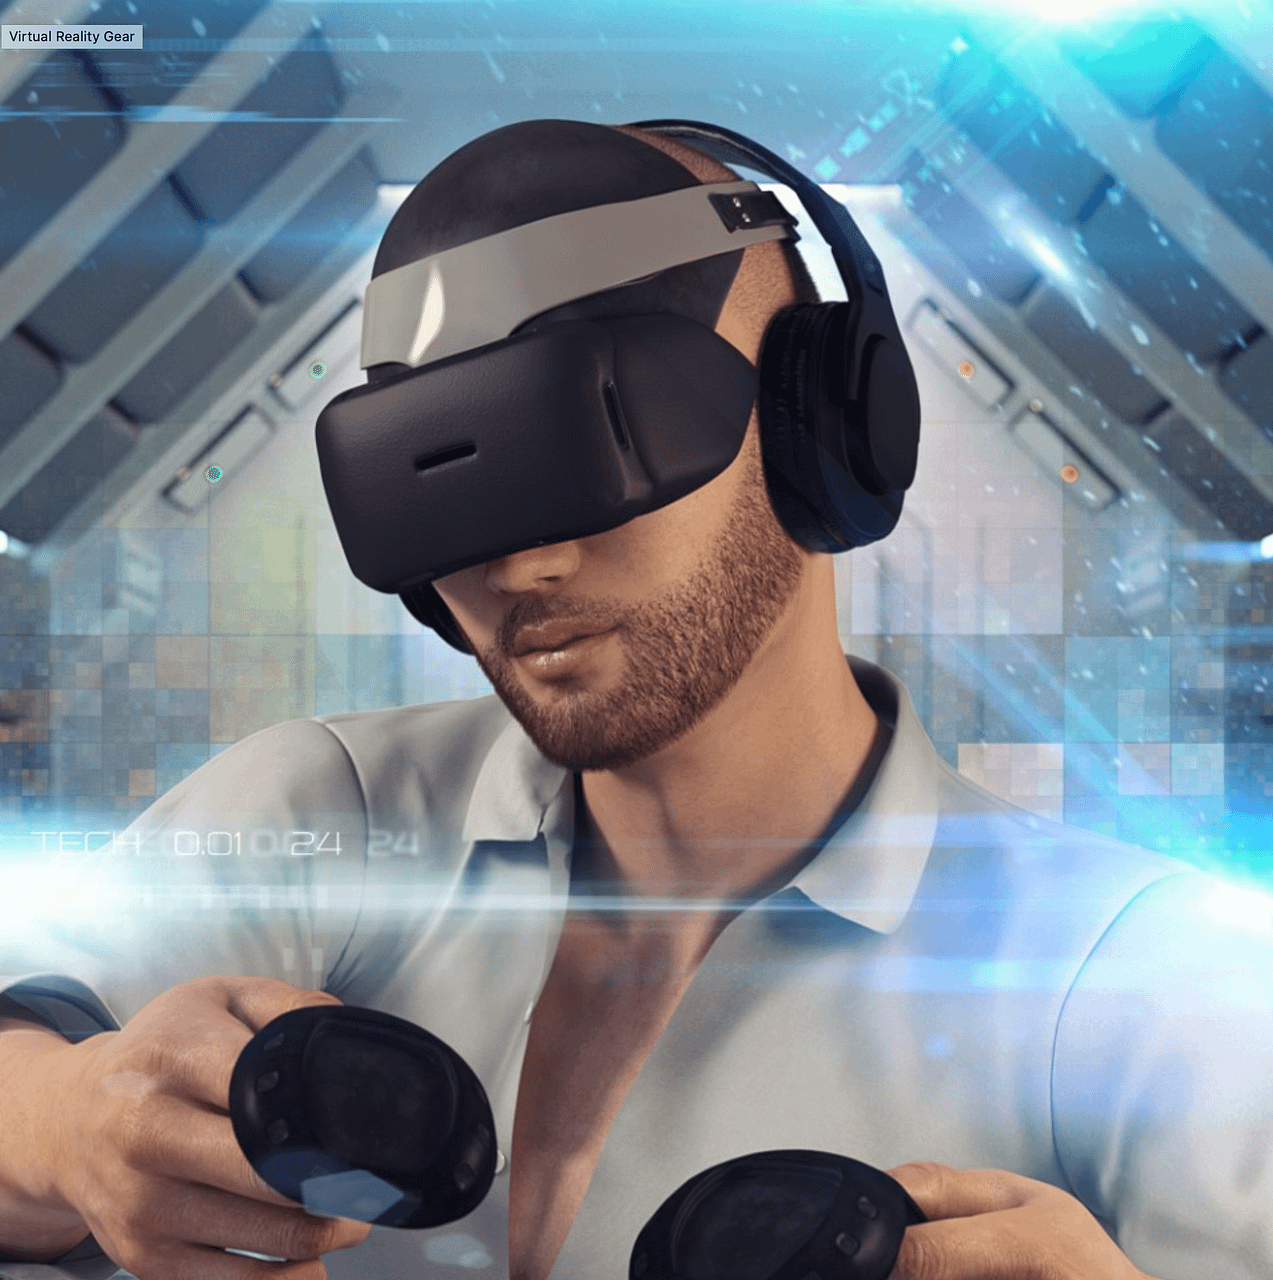 virtual reality gear daz3d